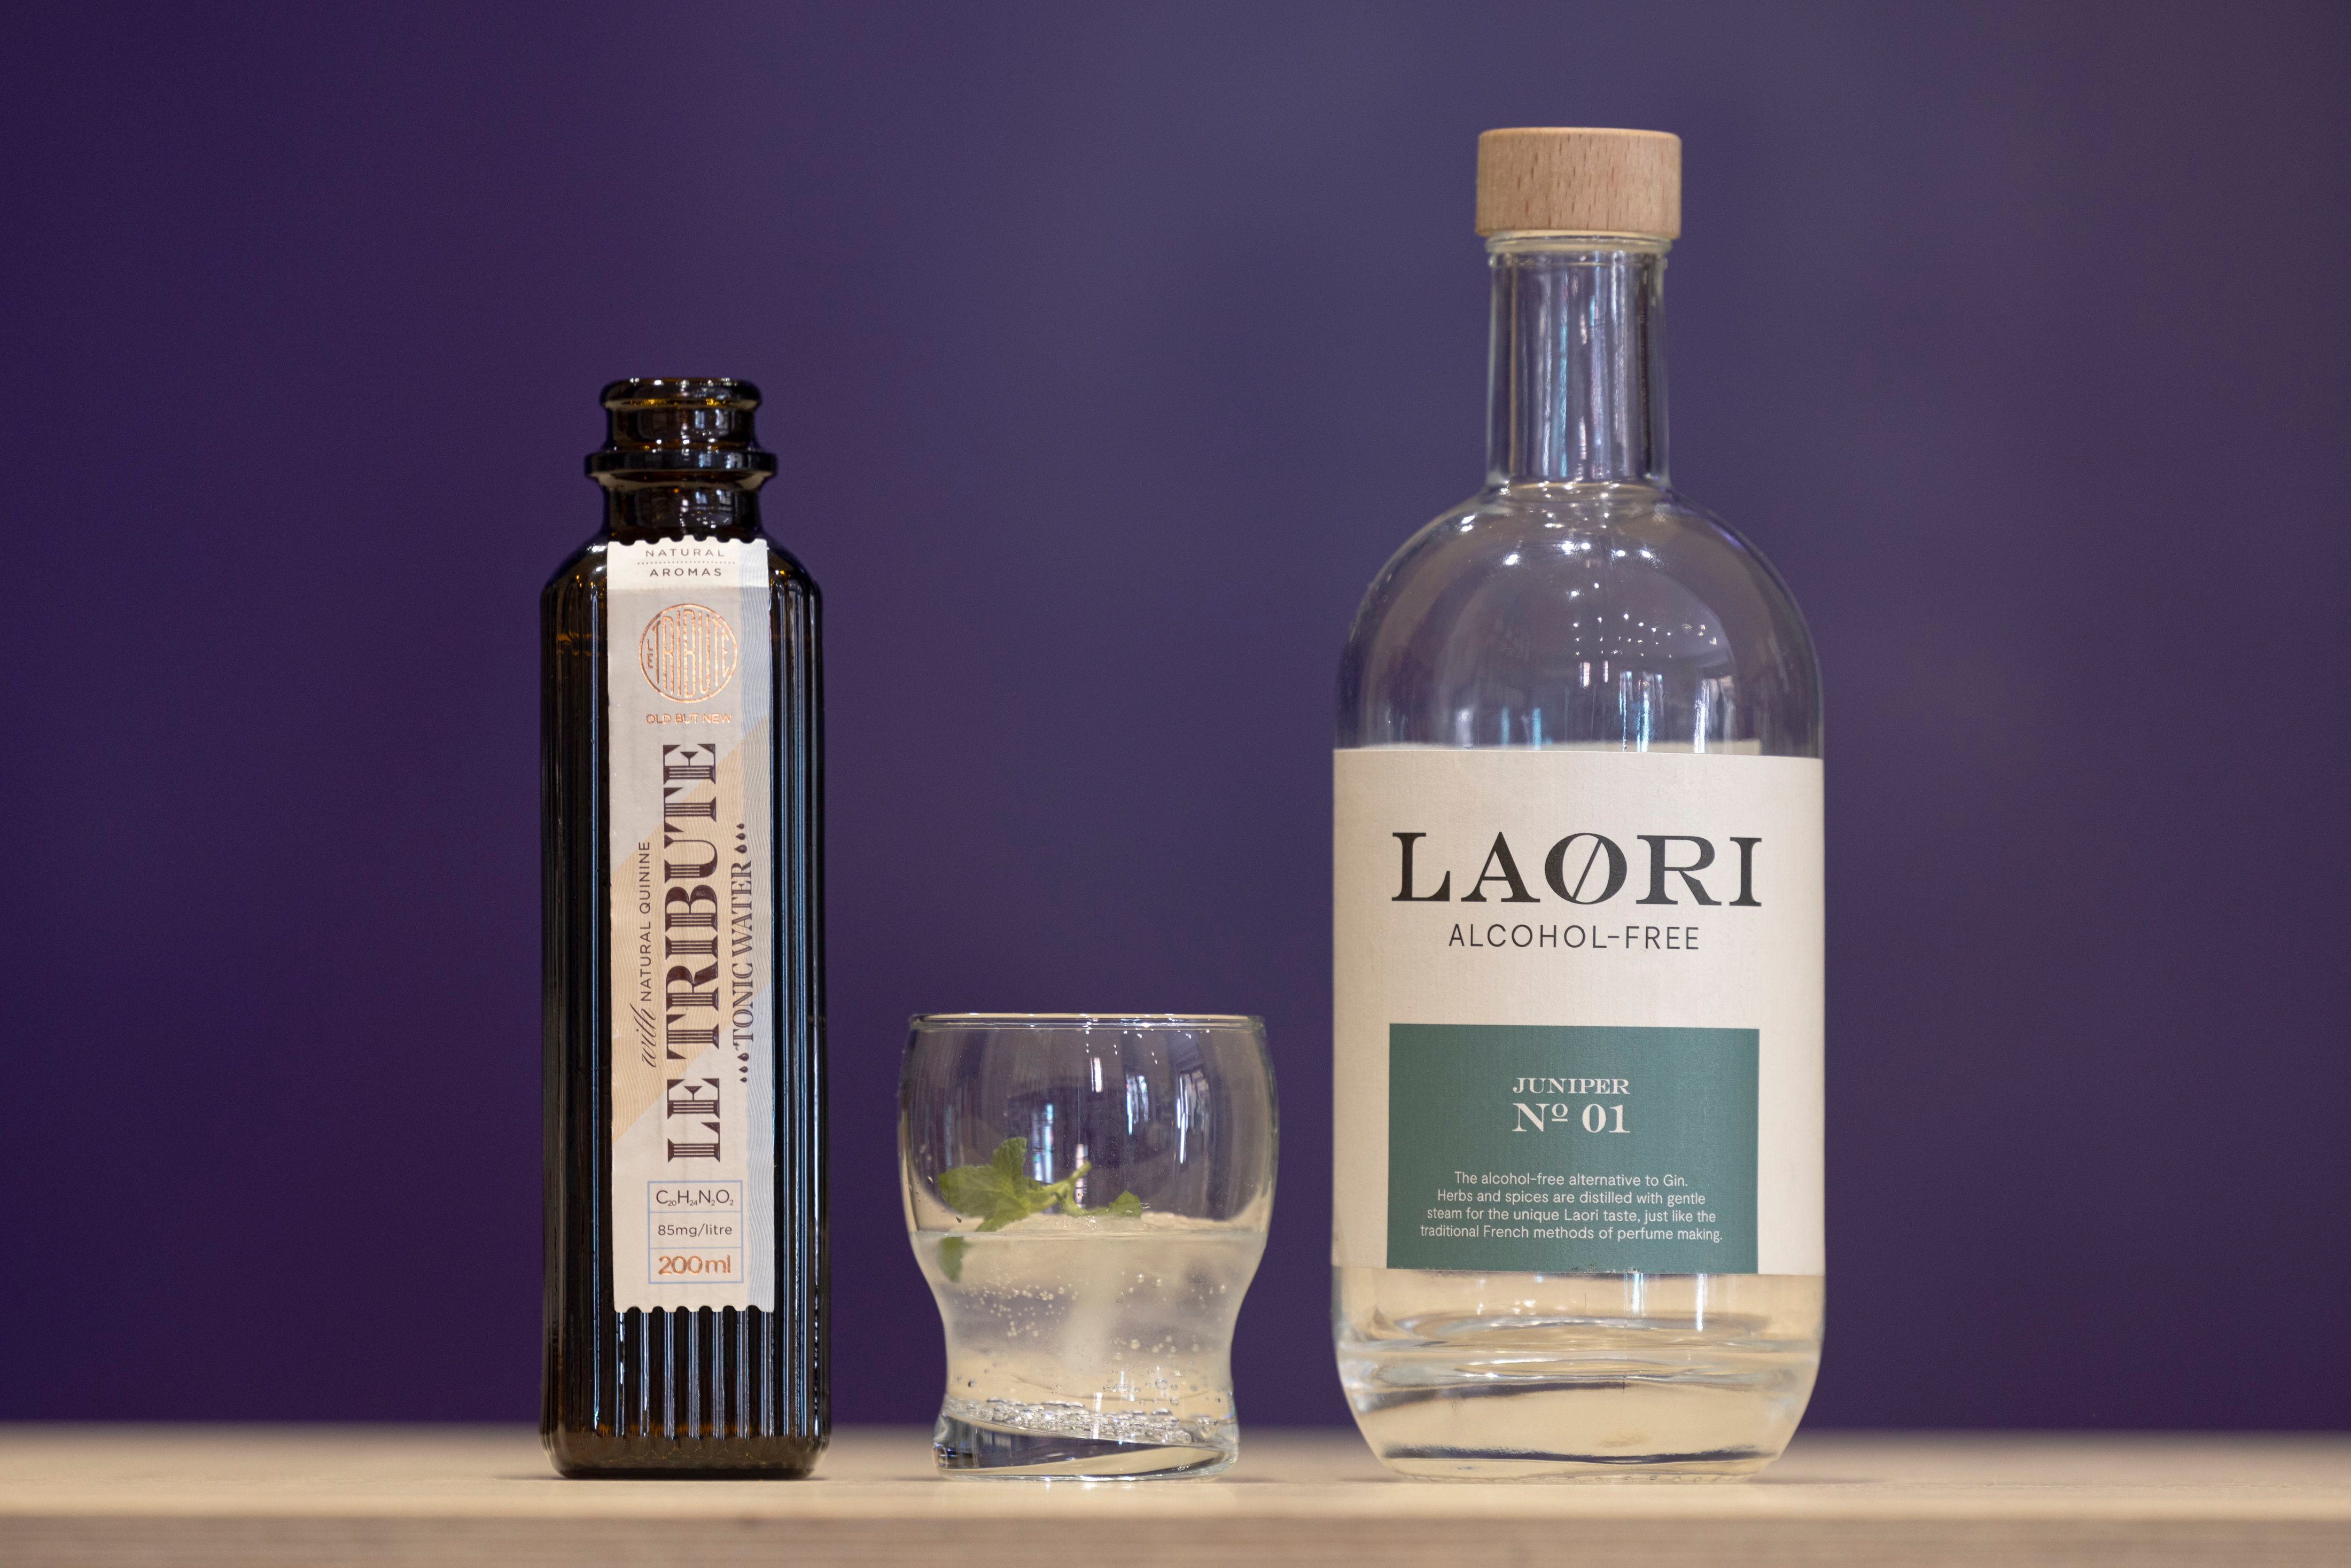 Un vasito de gin tonic hecho con la ginebra Laori y la tónica Le Tribute.